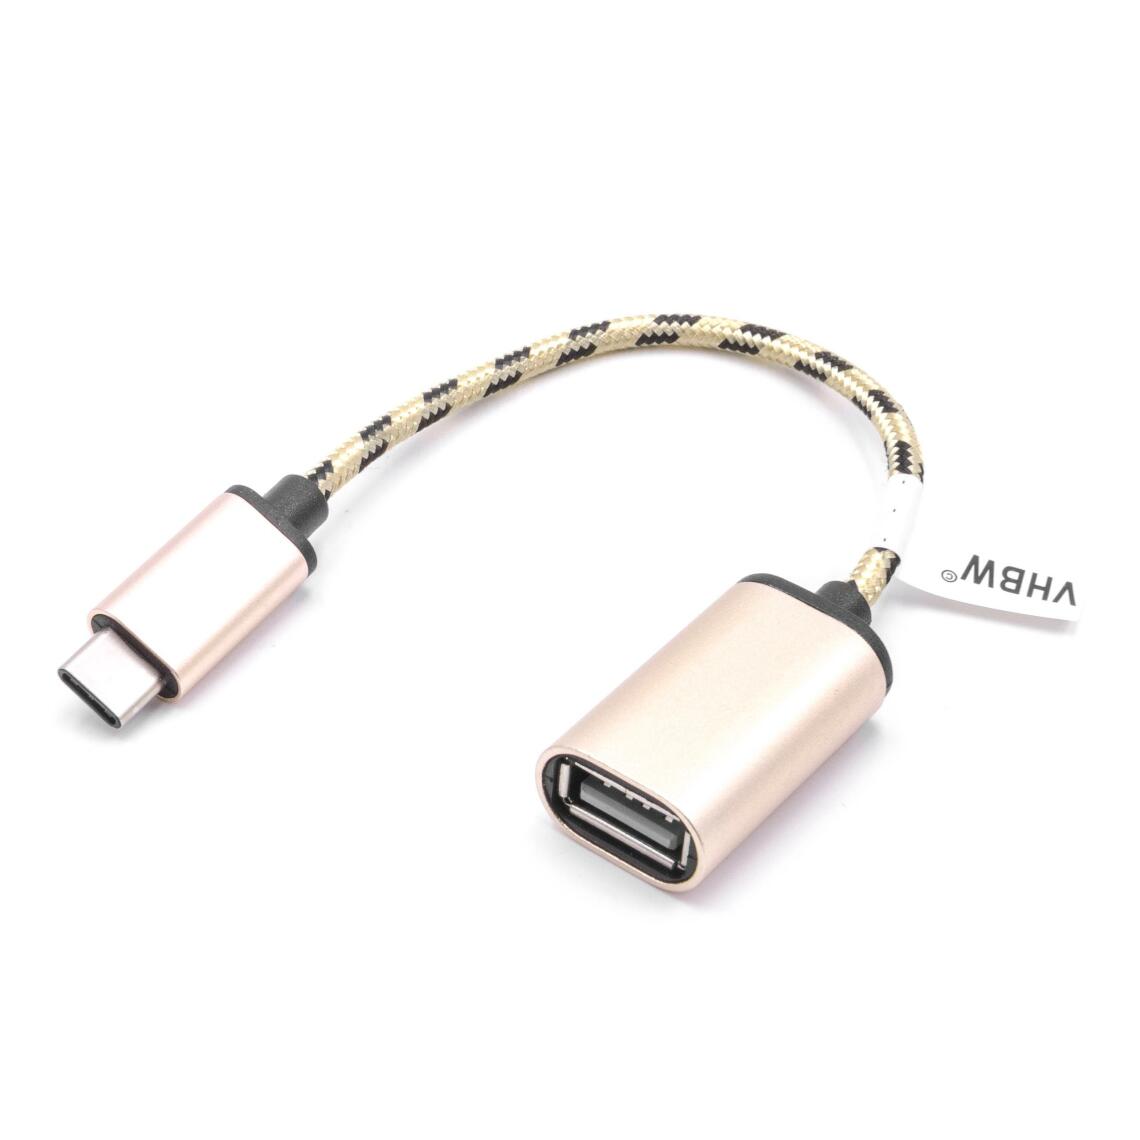 Vhbw - vhbw câble adaptateur USB type C sur USB 2.0 pour Honor 8, 9, View 10 - Accessoires alimentation